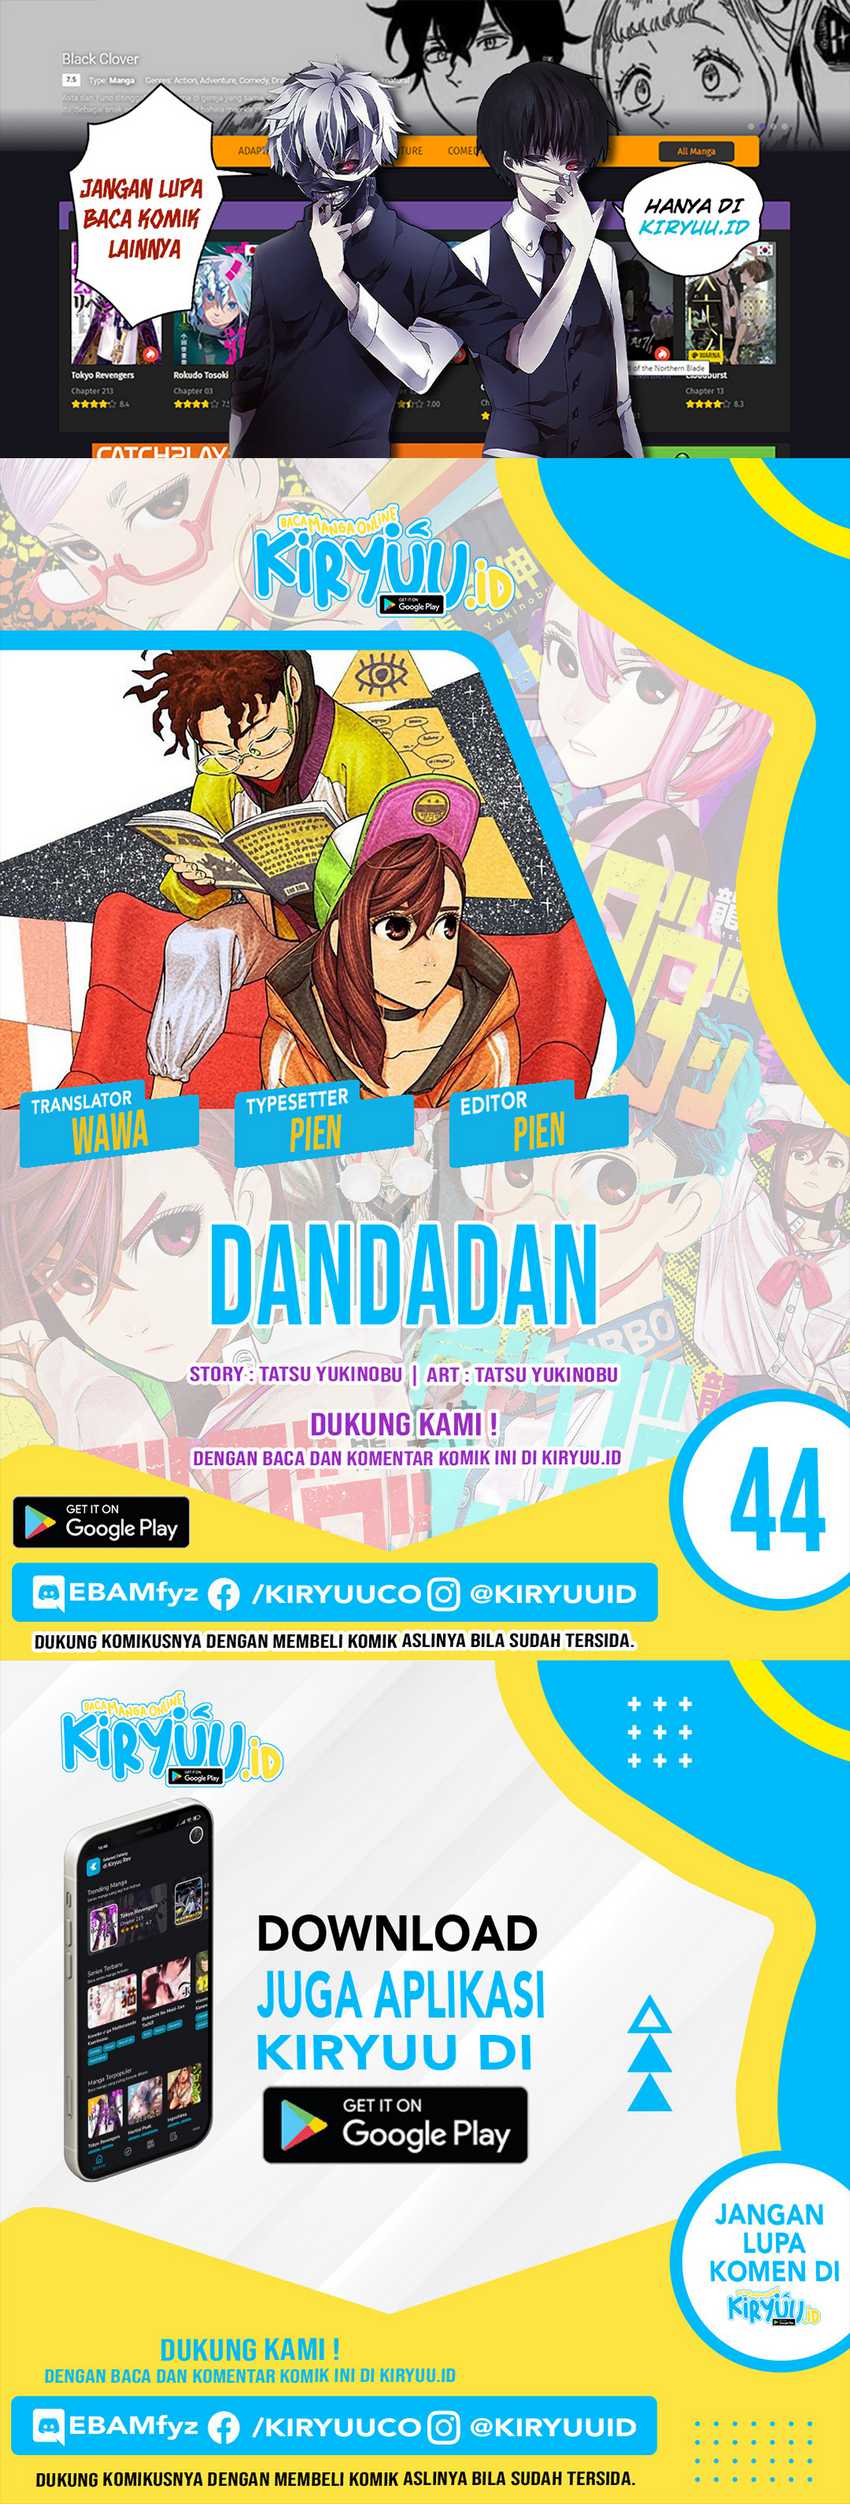 Dandadan Chapter 44